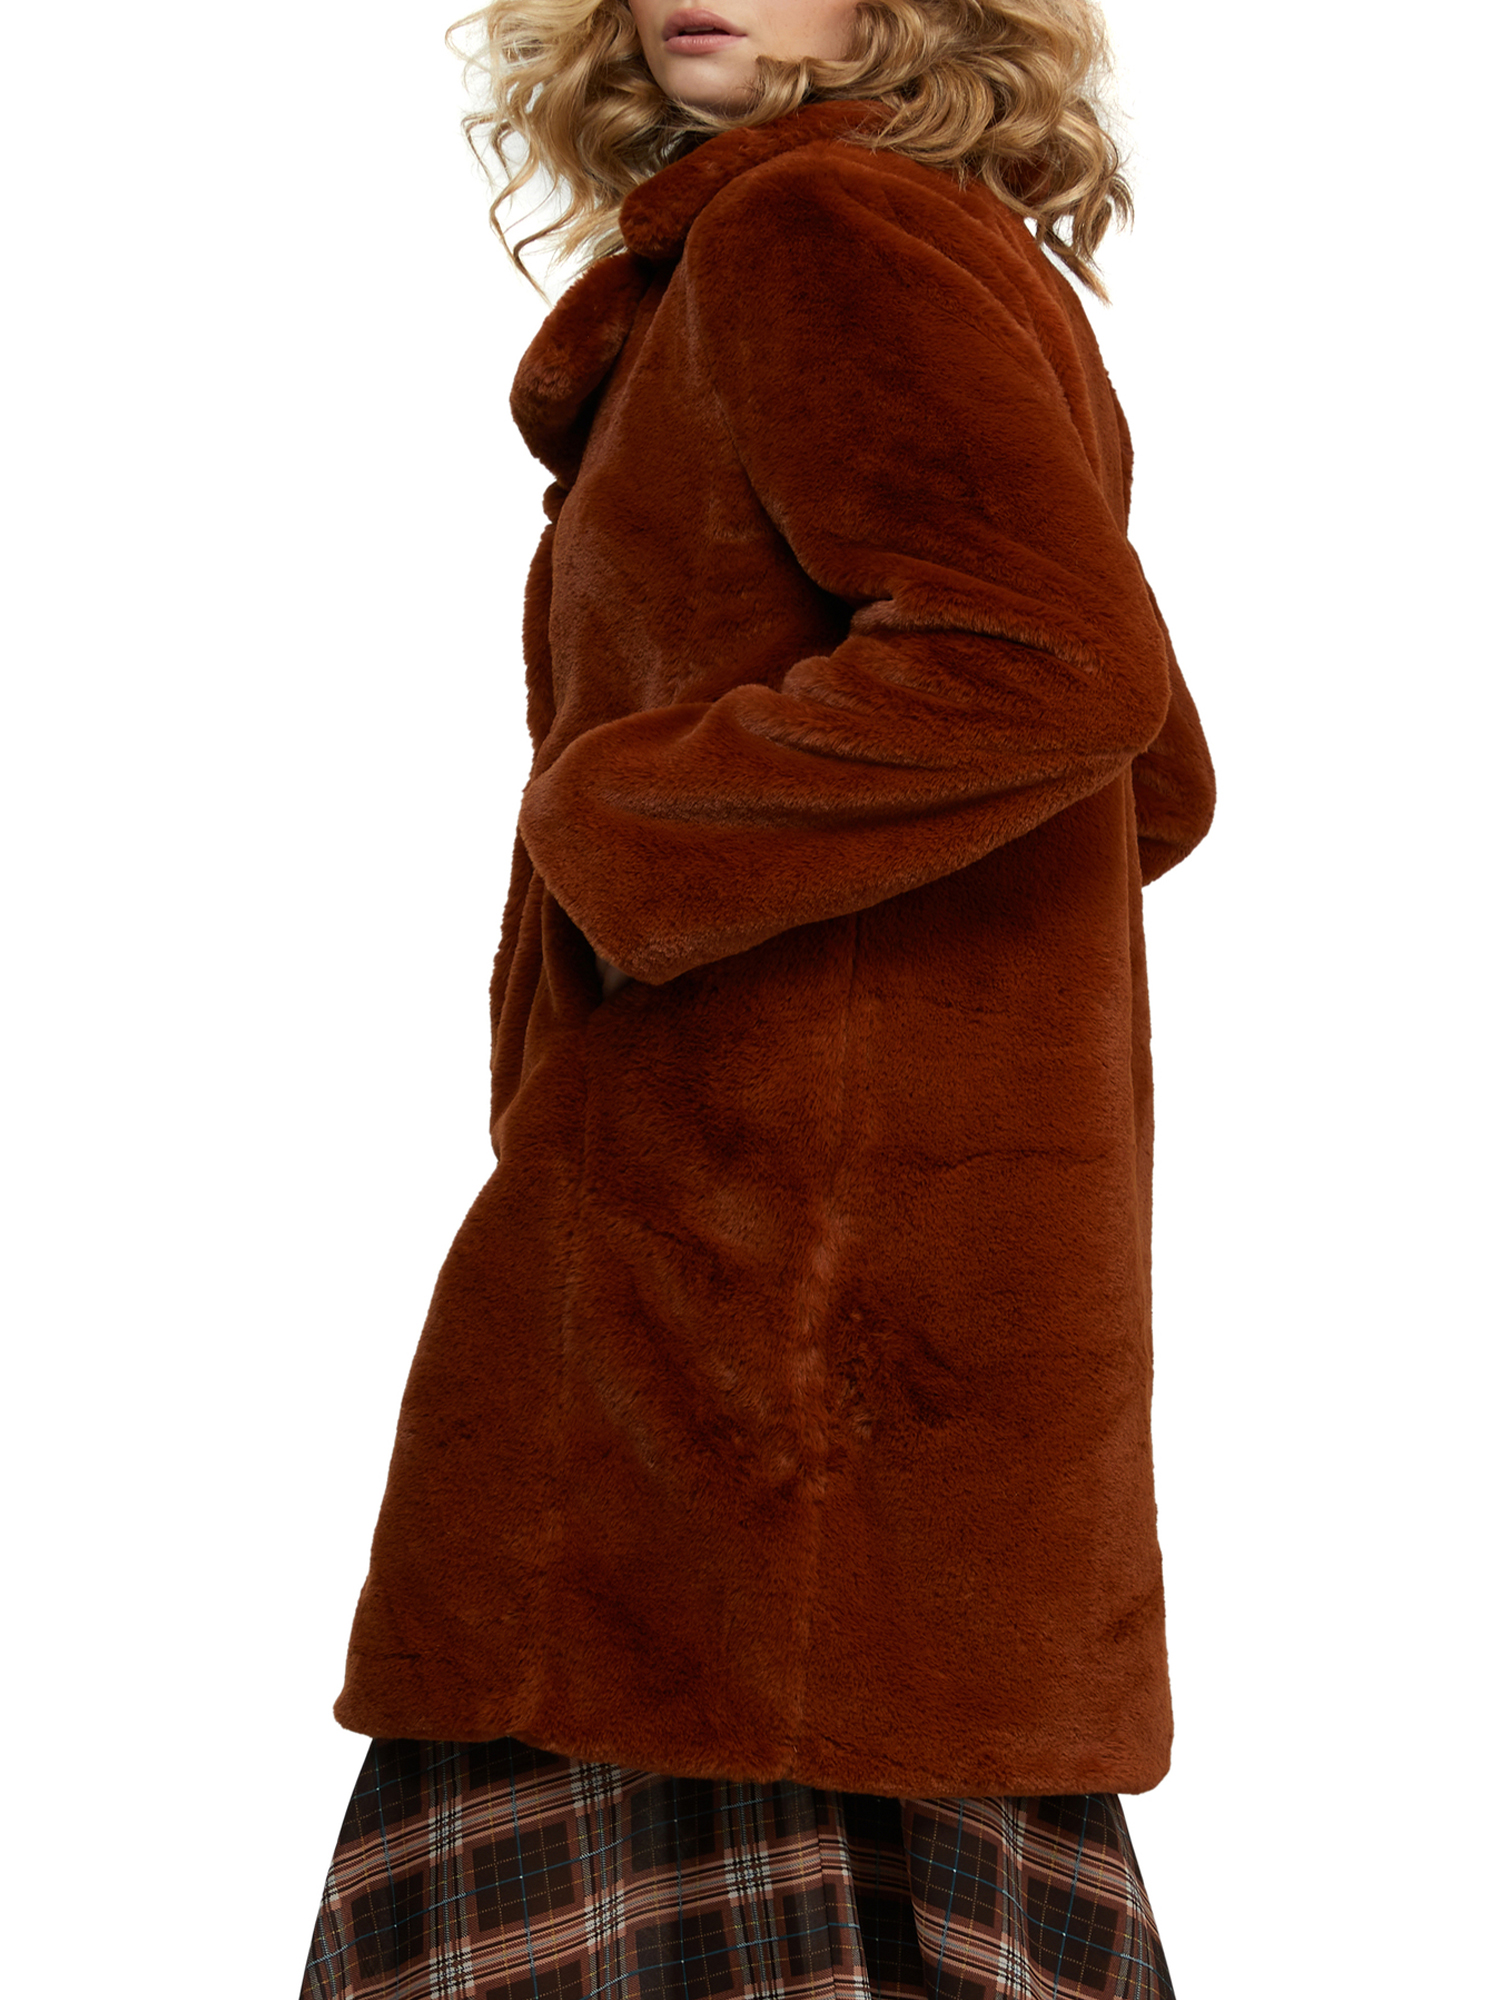 Badgely Mischka Women’s Long Faux Fur Coat - image 2 of 3